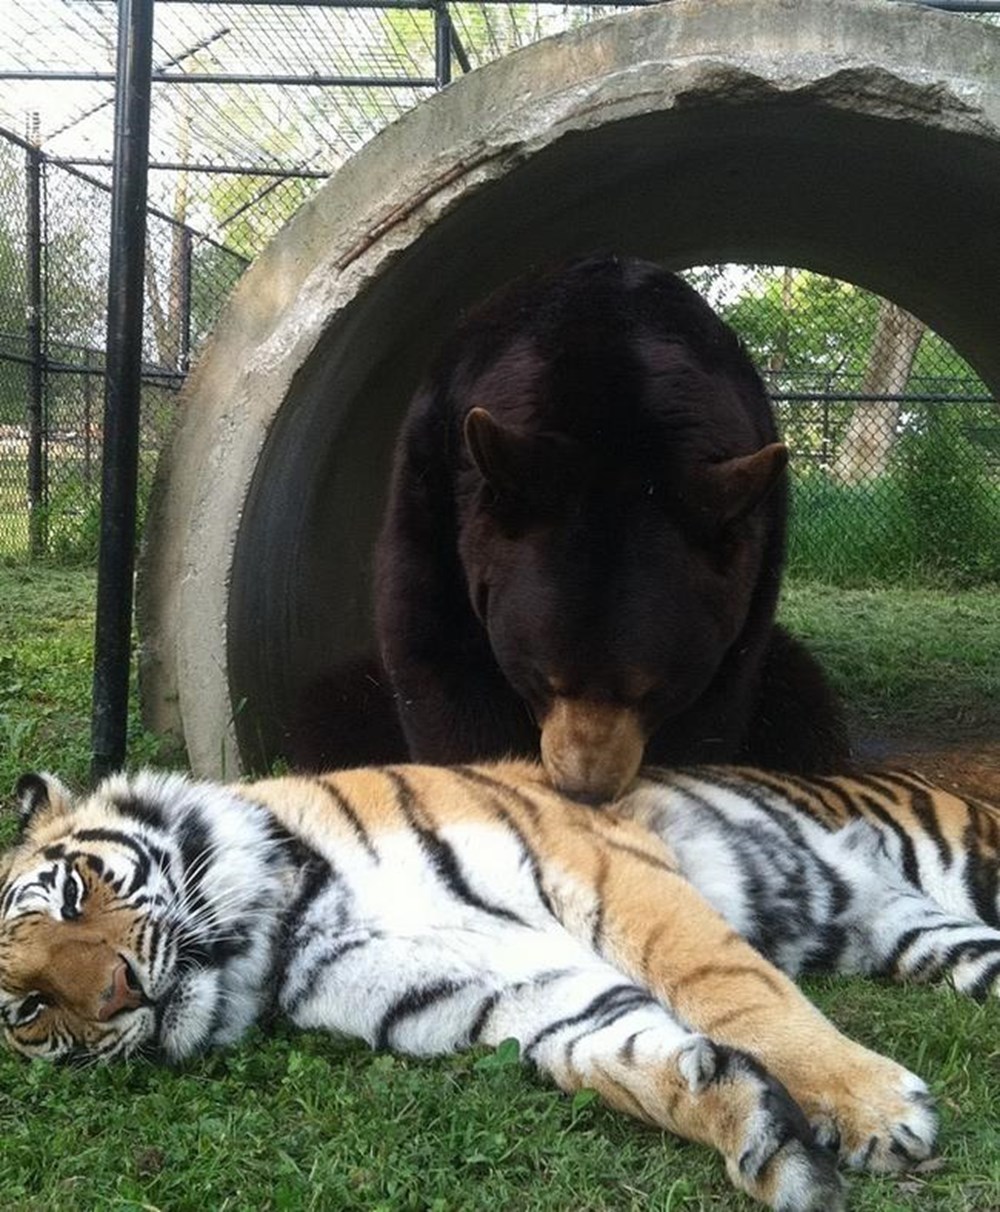 Левый тигр. Лев Лео тигр Шерхан и медведь балу. Медведь балу, Лев Лео и тигр Шер-Хан. Балу Лео и Шерхан. Дружба медведя балу Льва Лео и тигра Шерхана.